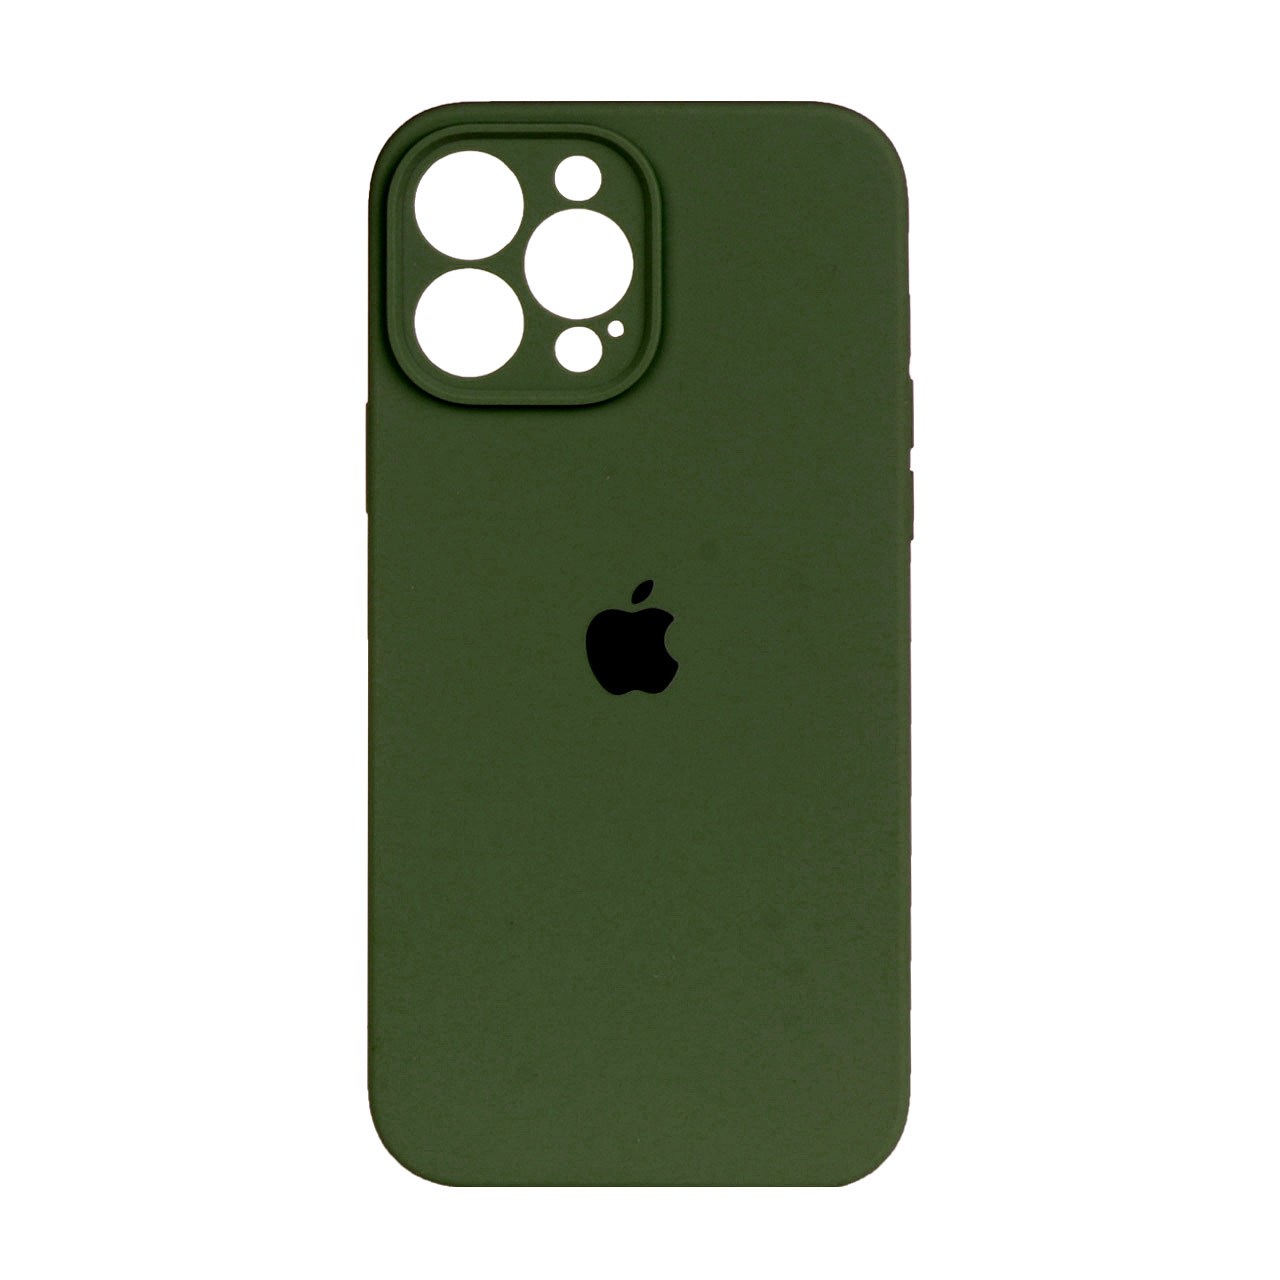 قاب سیلیکونی پاک کنی محافظ لنزدار iPhone 12 Pro Max - سبز تیره (پک اصلی)